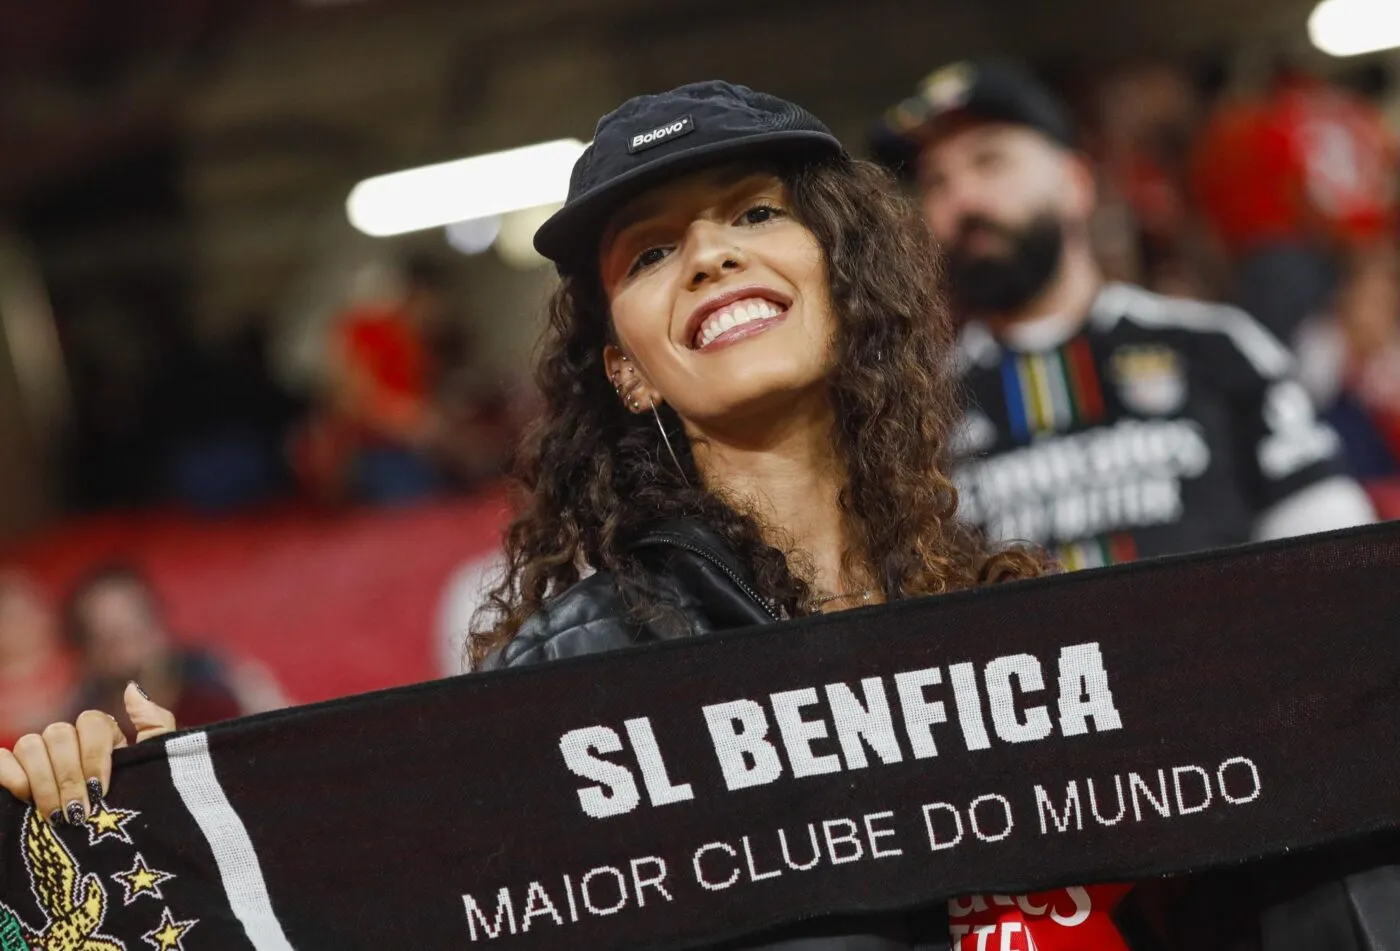 Des supporters du Benfica exflitrés d&rsquo;un Burger King sur la Canebière